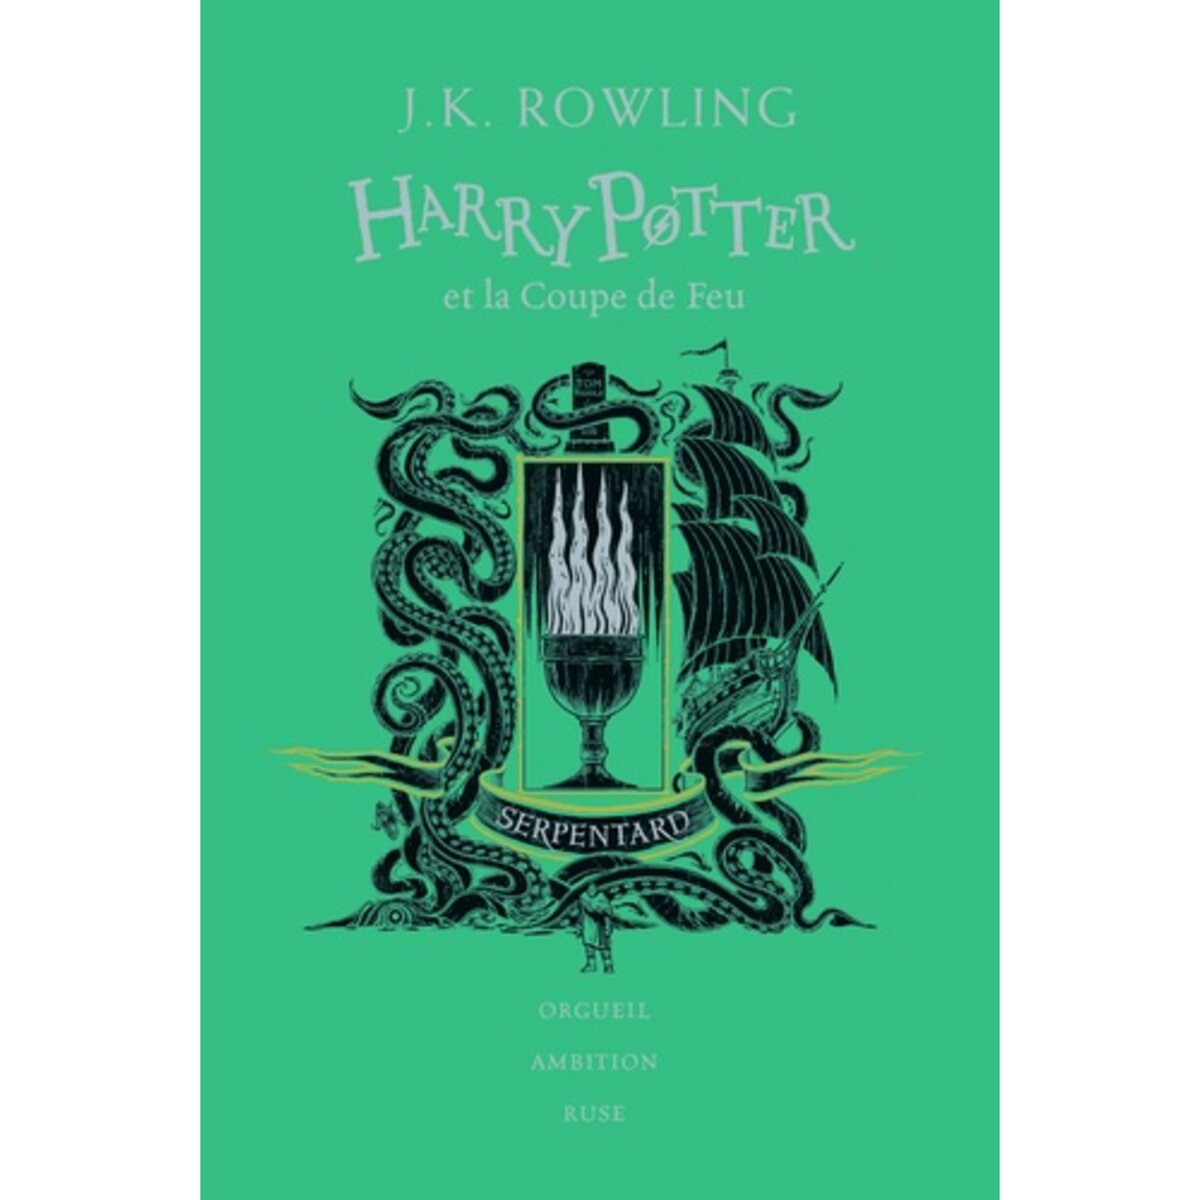  HARRY POTTER TOME 4 : HARRY POTTER ET LA COUPE DE FEU (SERPENTARD). EDITION COLLECTOR, Rowling J.K.